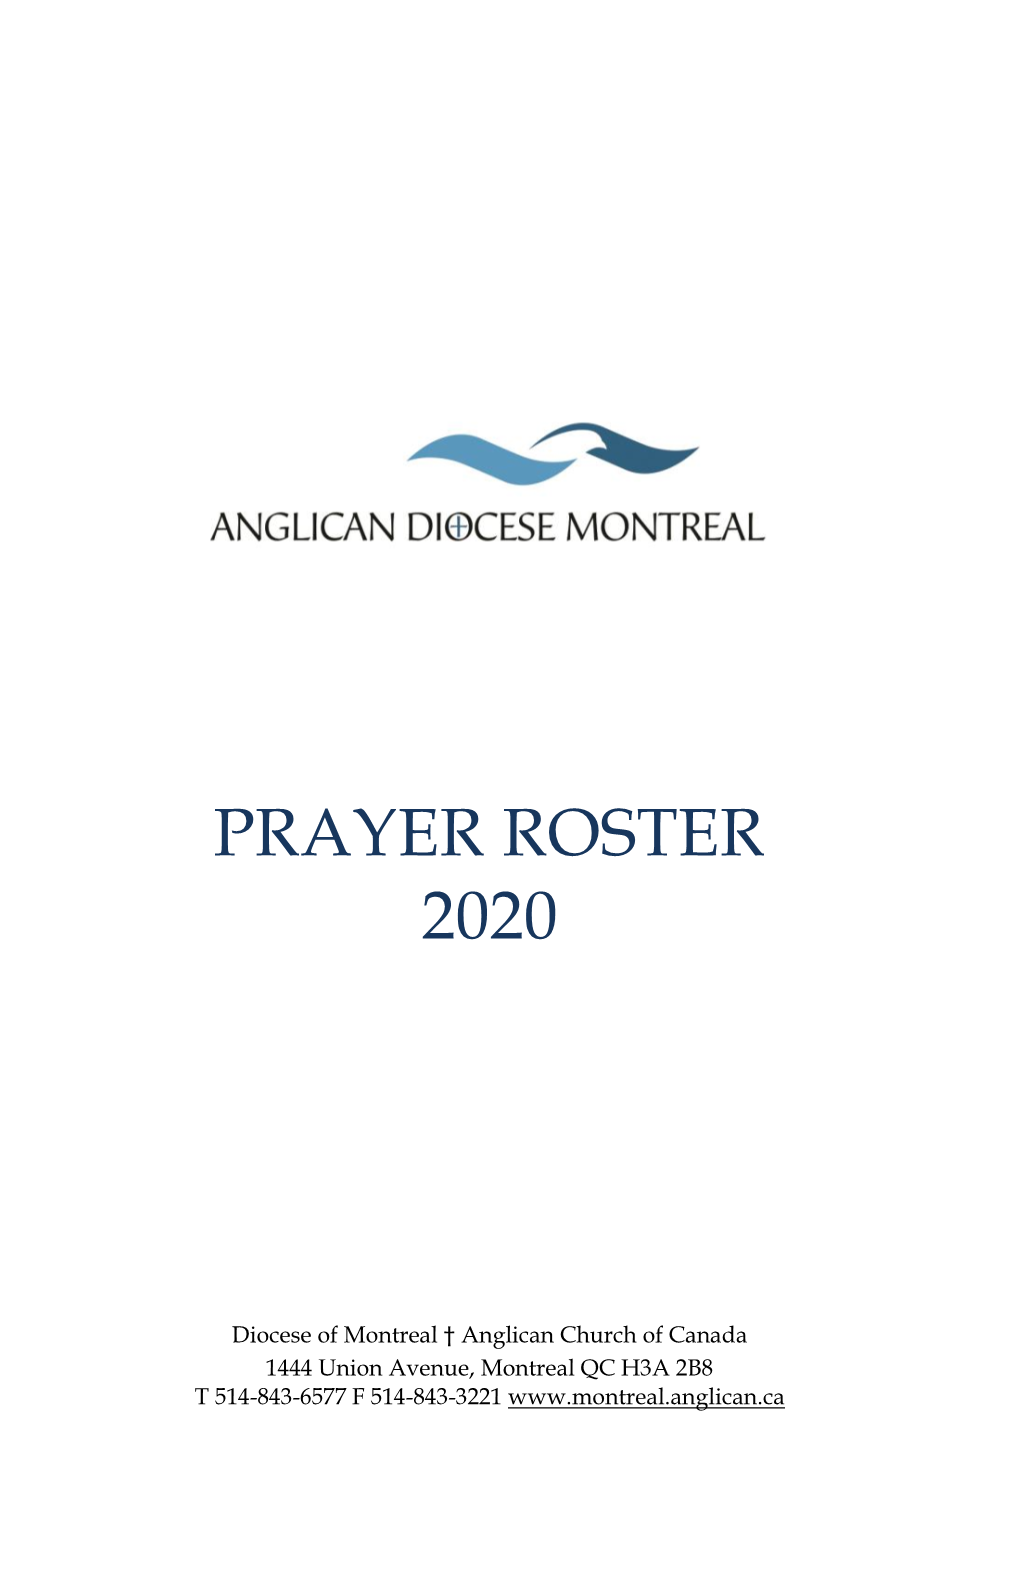 Prayer Roster 2020